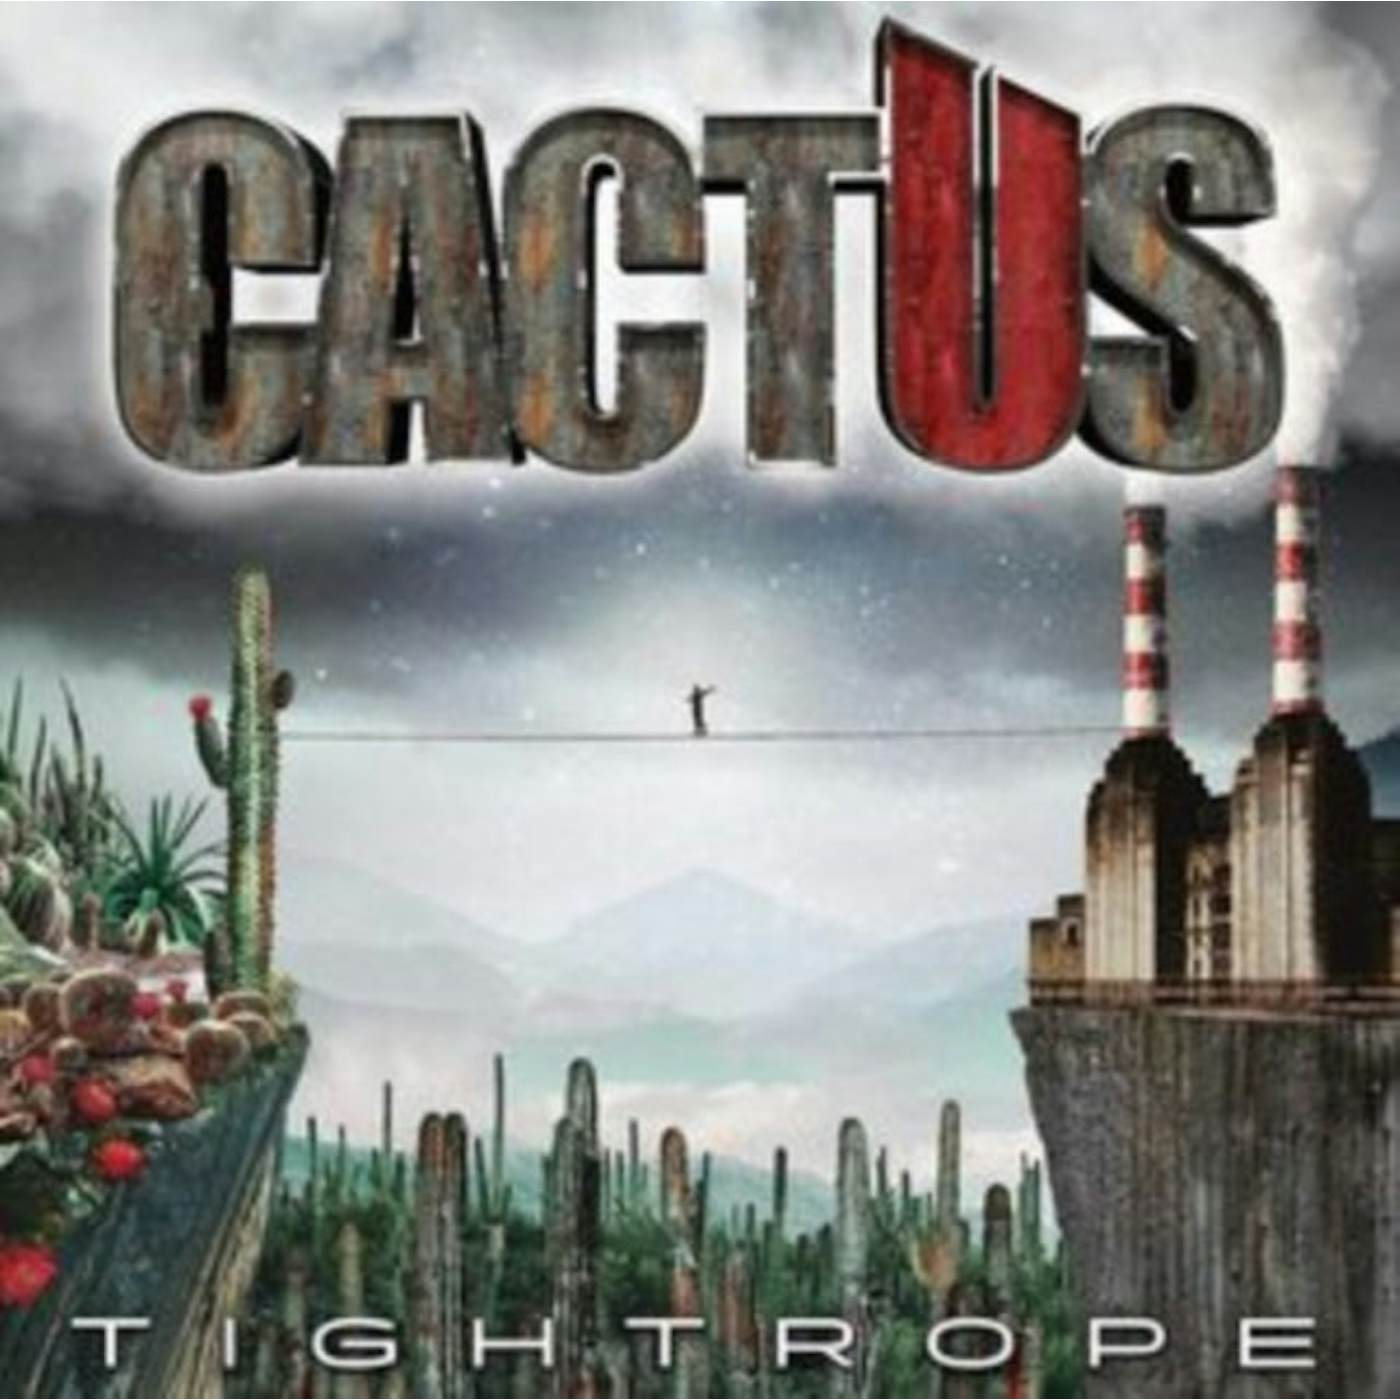 Cactus LP - Tightrope (Vinyl)